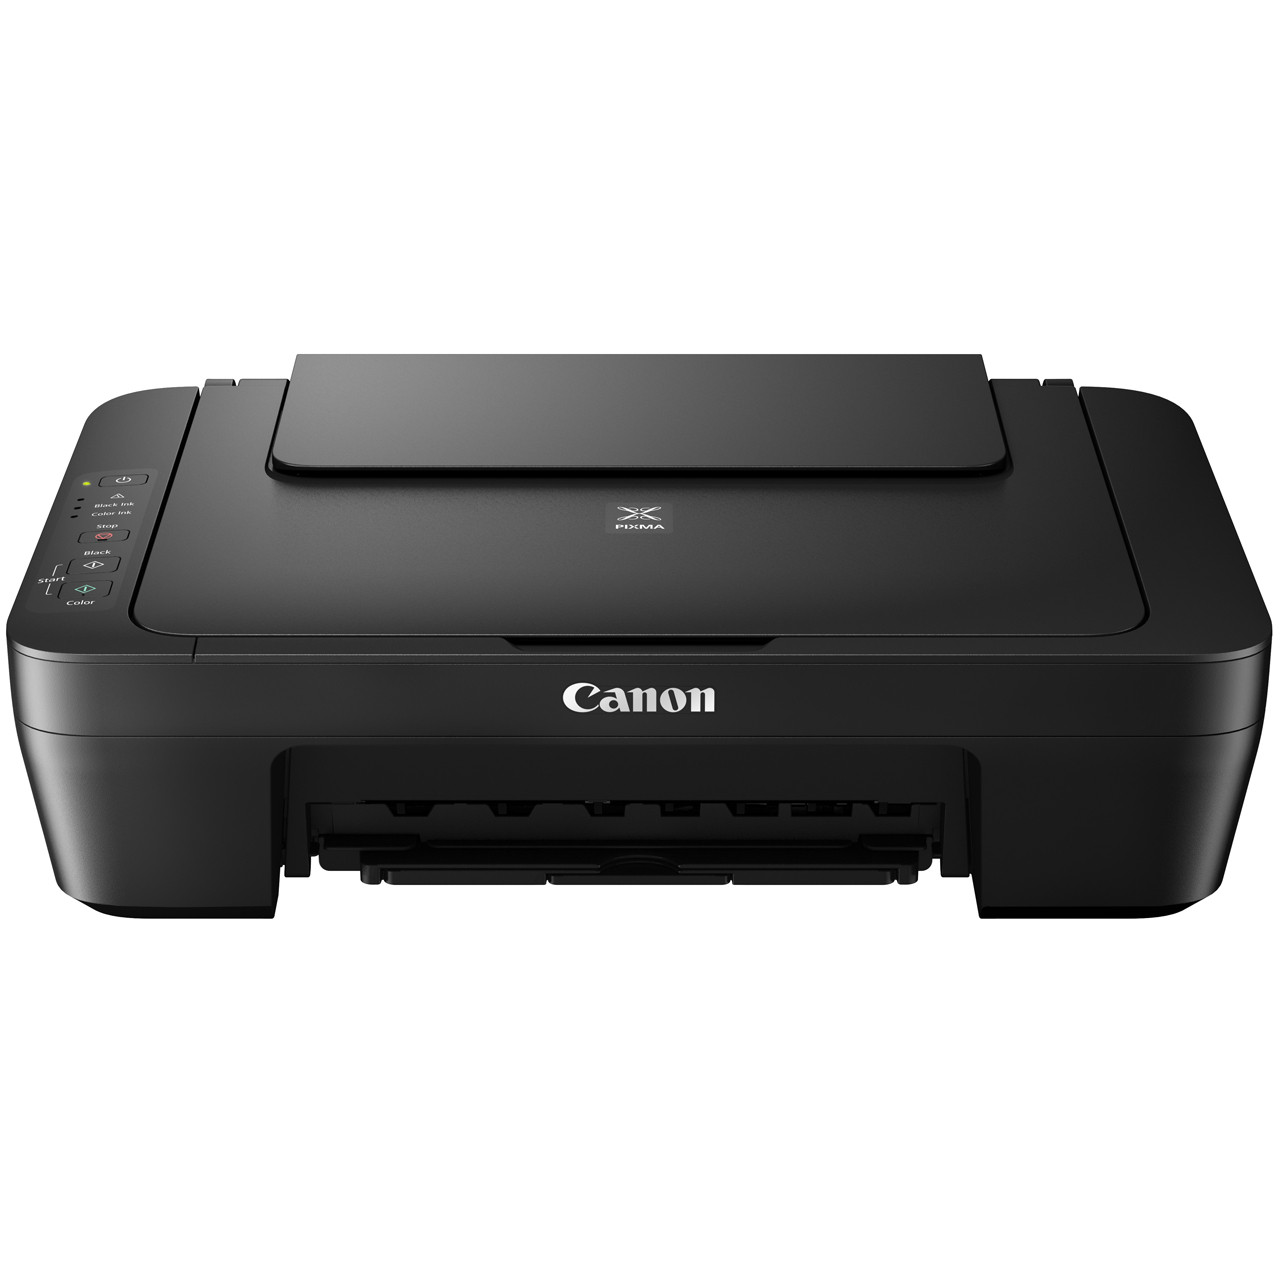 МФУ CANON Pixma E414 струйный принтер сканер копир 4800 dpi печать ска